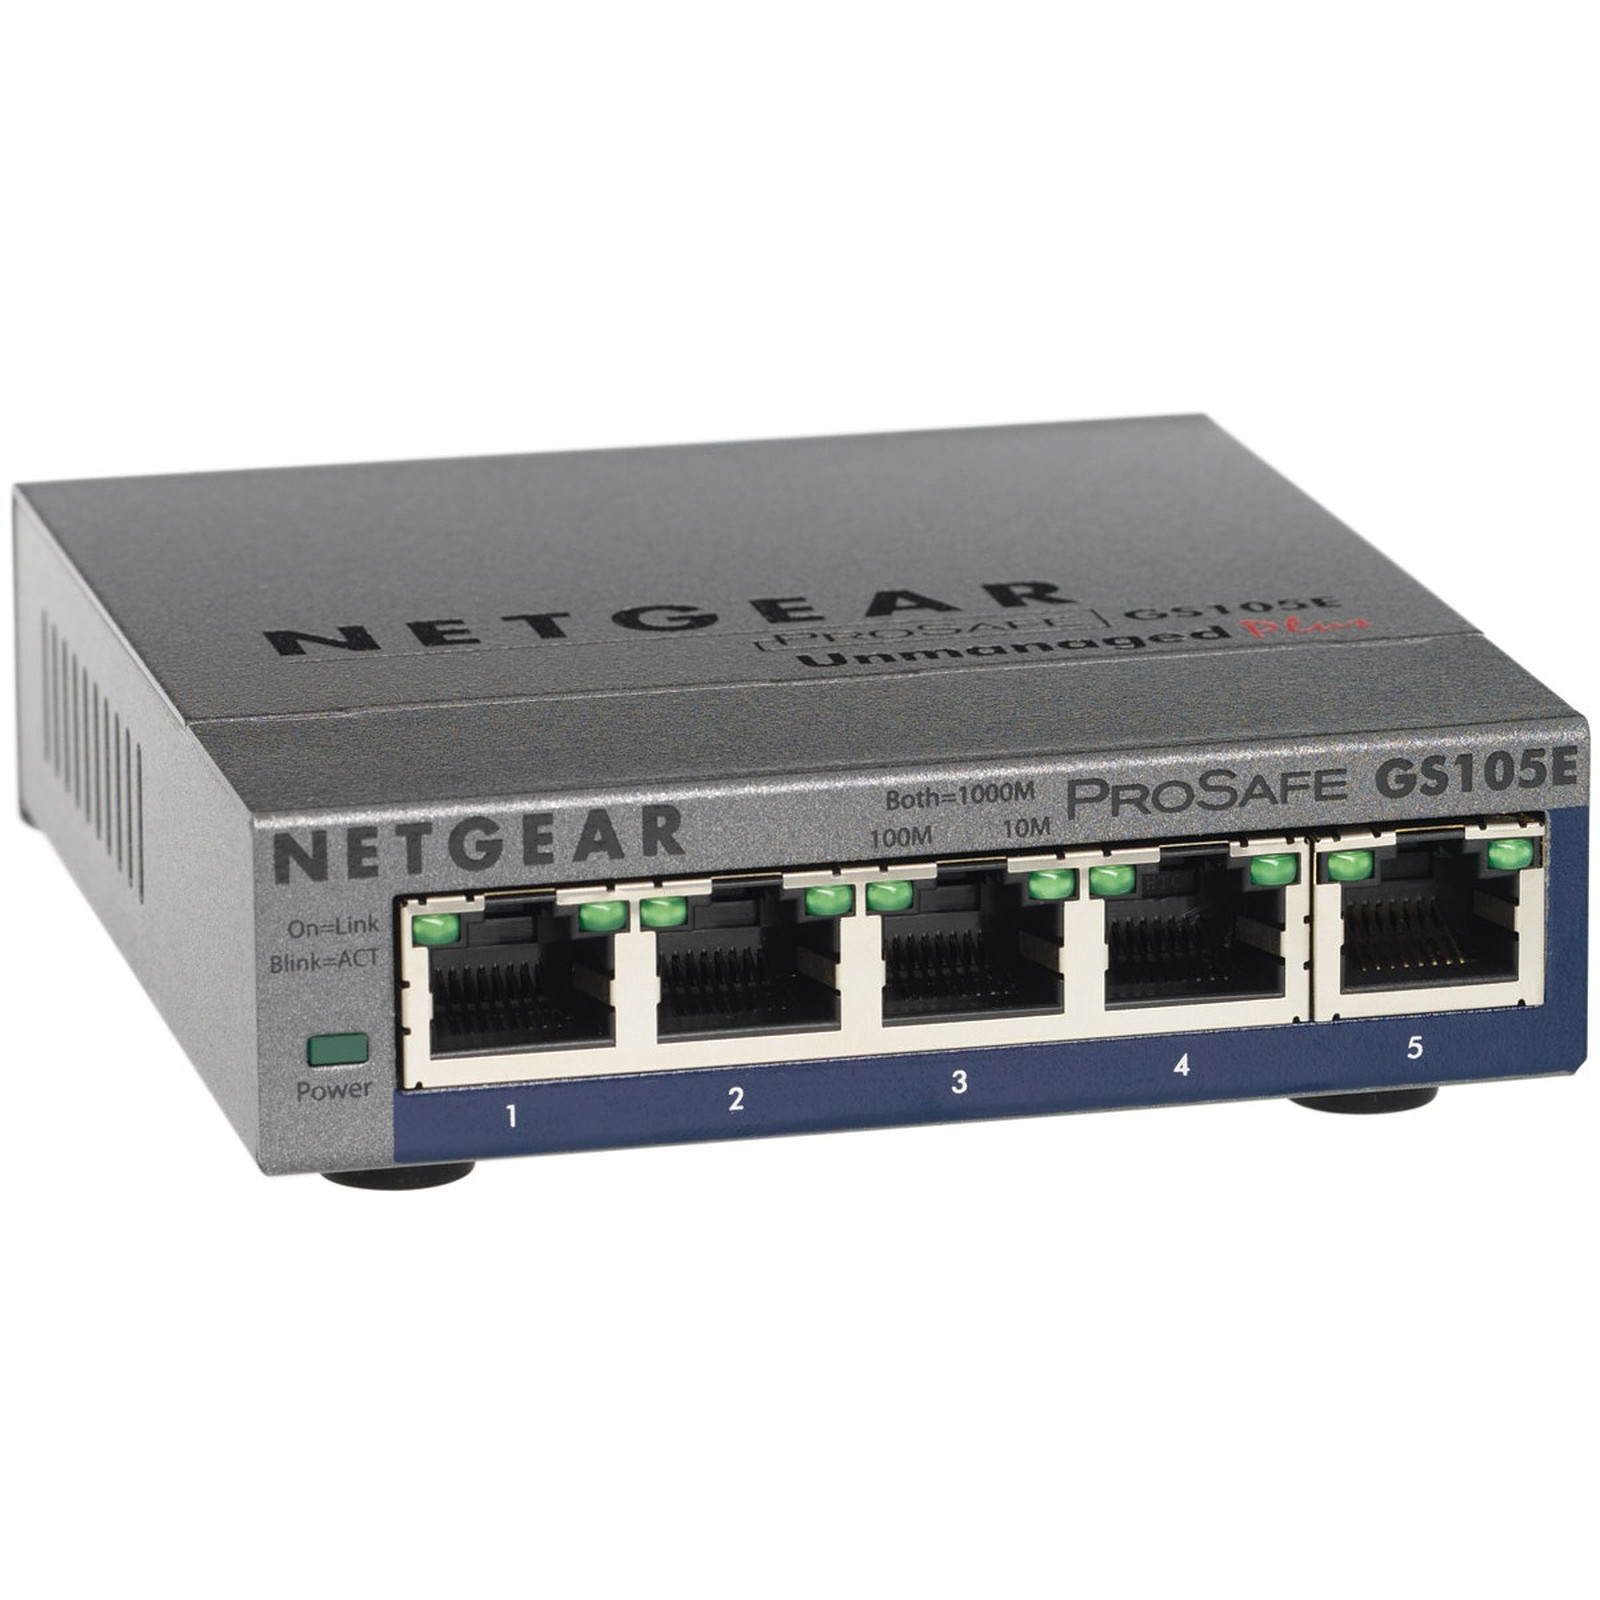 Netgear GS105E - Switch Netgear